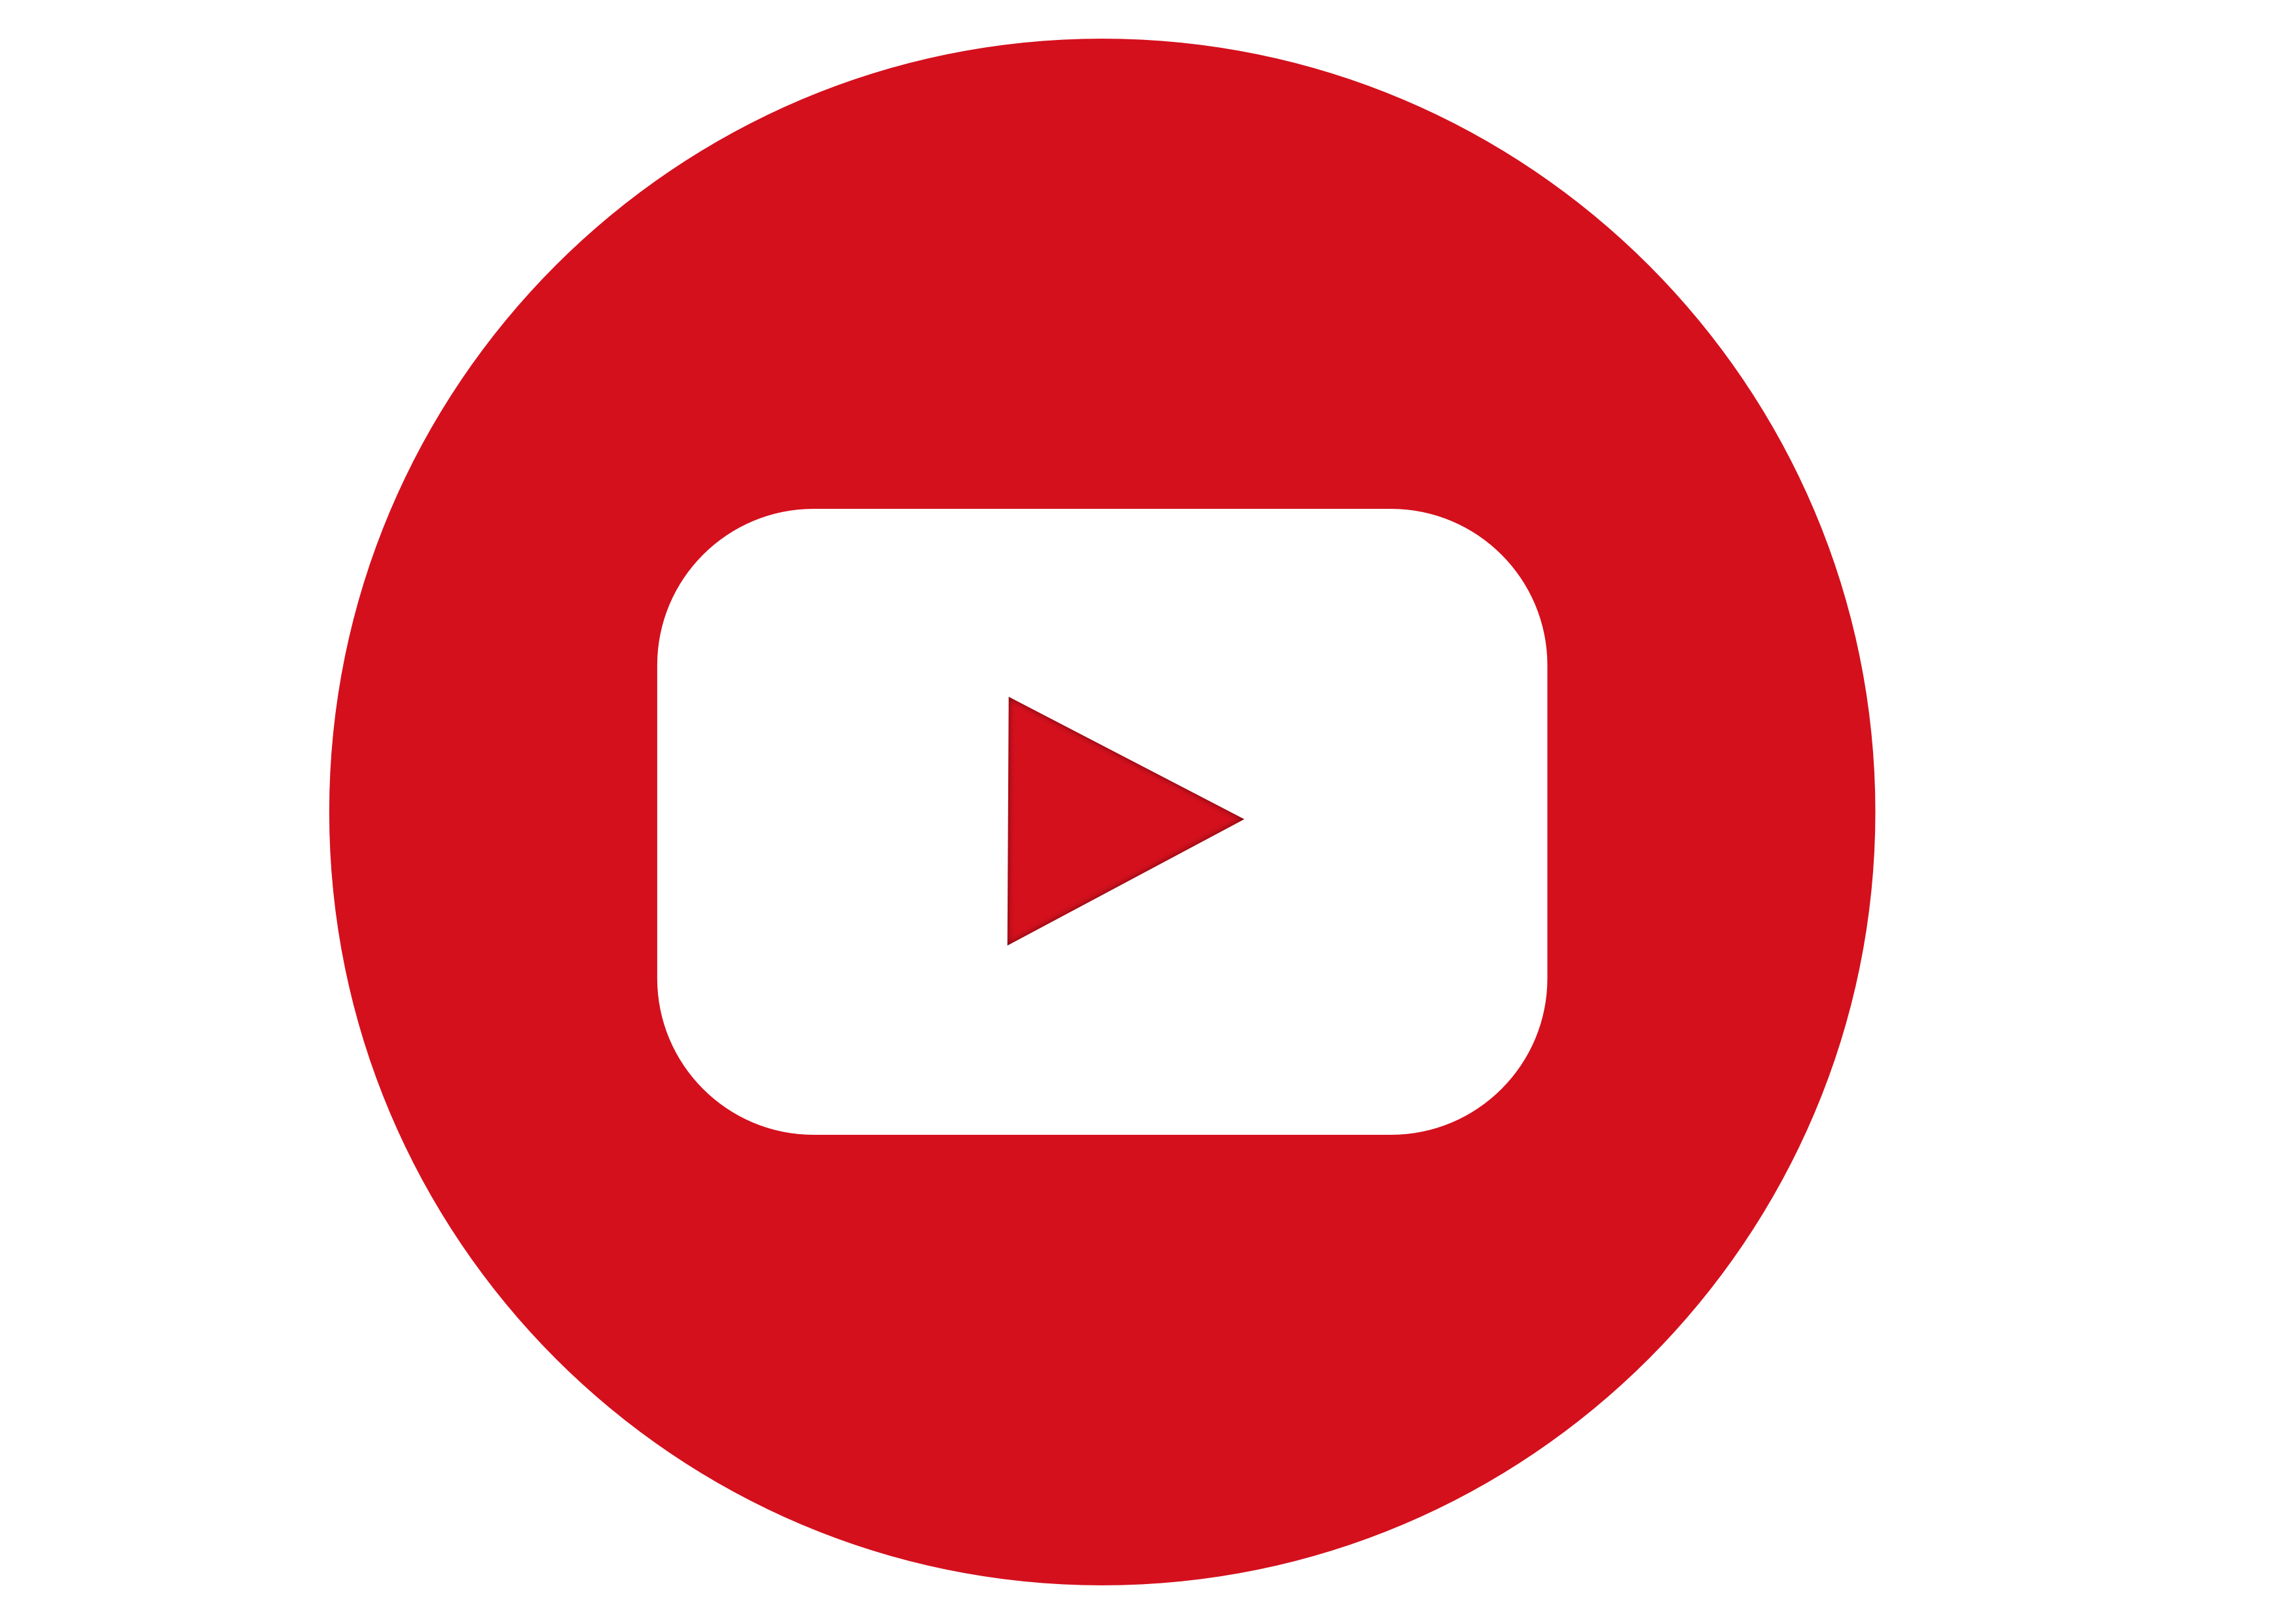 Последний версия youtube без рекламы. Ютуб лого. Значок ютуб PNG. Логотип youtube на белом фоне. Ютуб лого без фона.